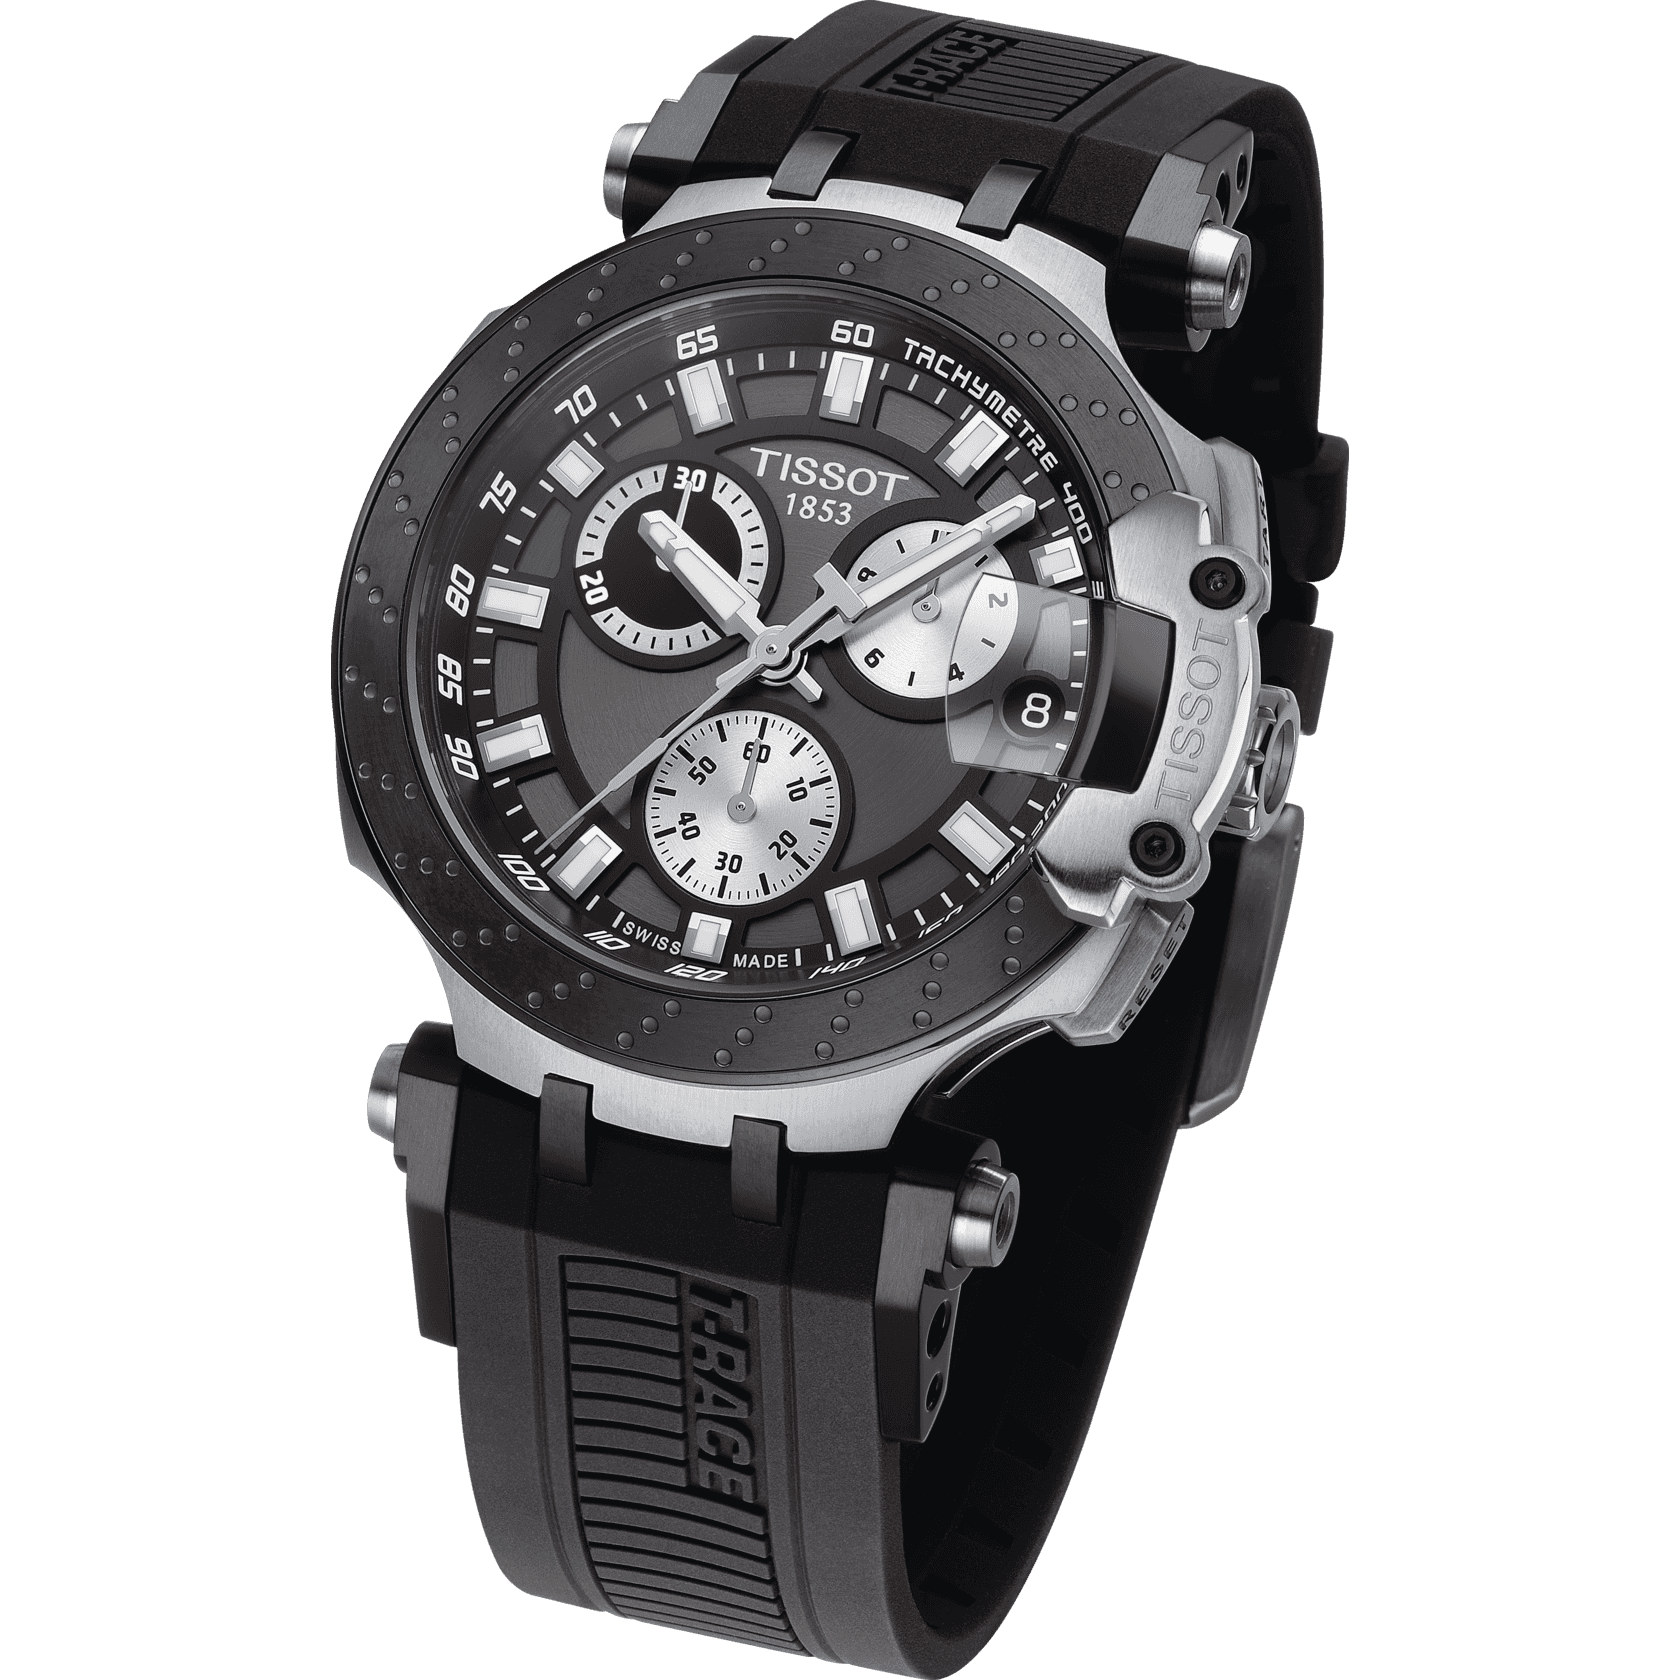 Tissot T Race Chronograph Quartz Anthracite Black Dial Watch For Men - T115.417.27.061.00